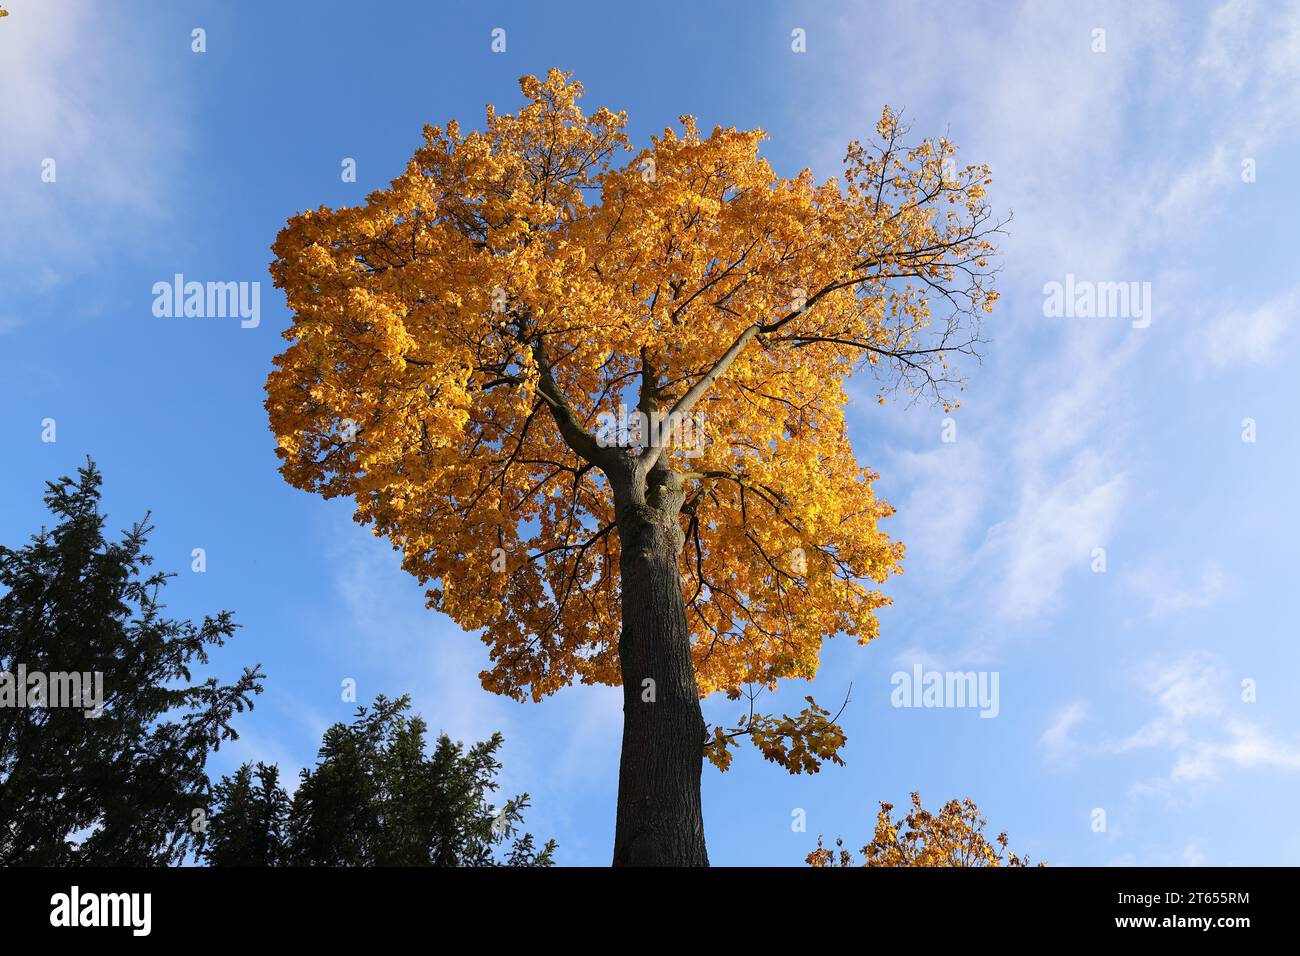 Vue d'en bas dans la couronne feuillue jaune-or d'un chêne contre un ciel bleu, copie espace Banque D'Images